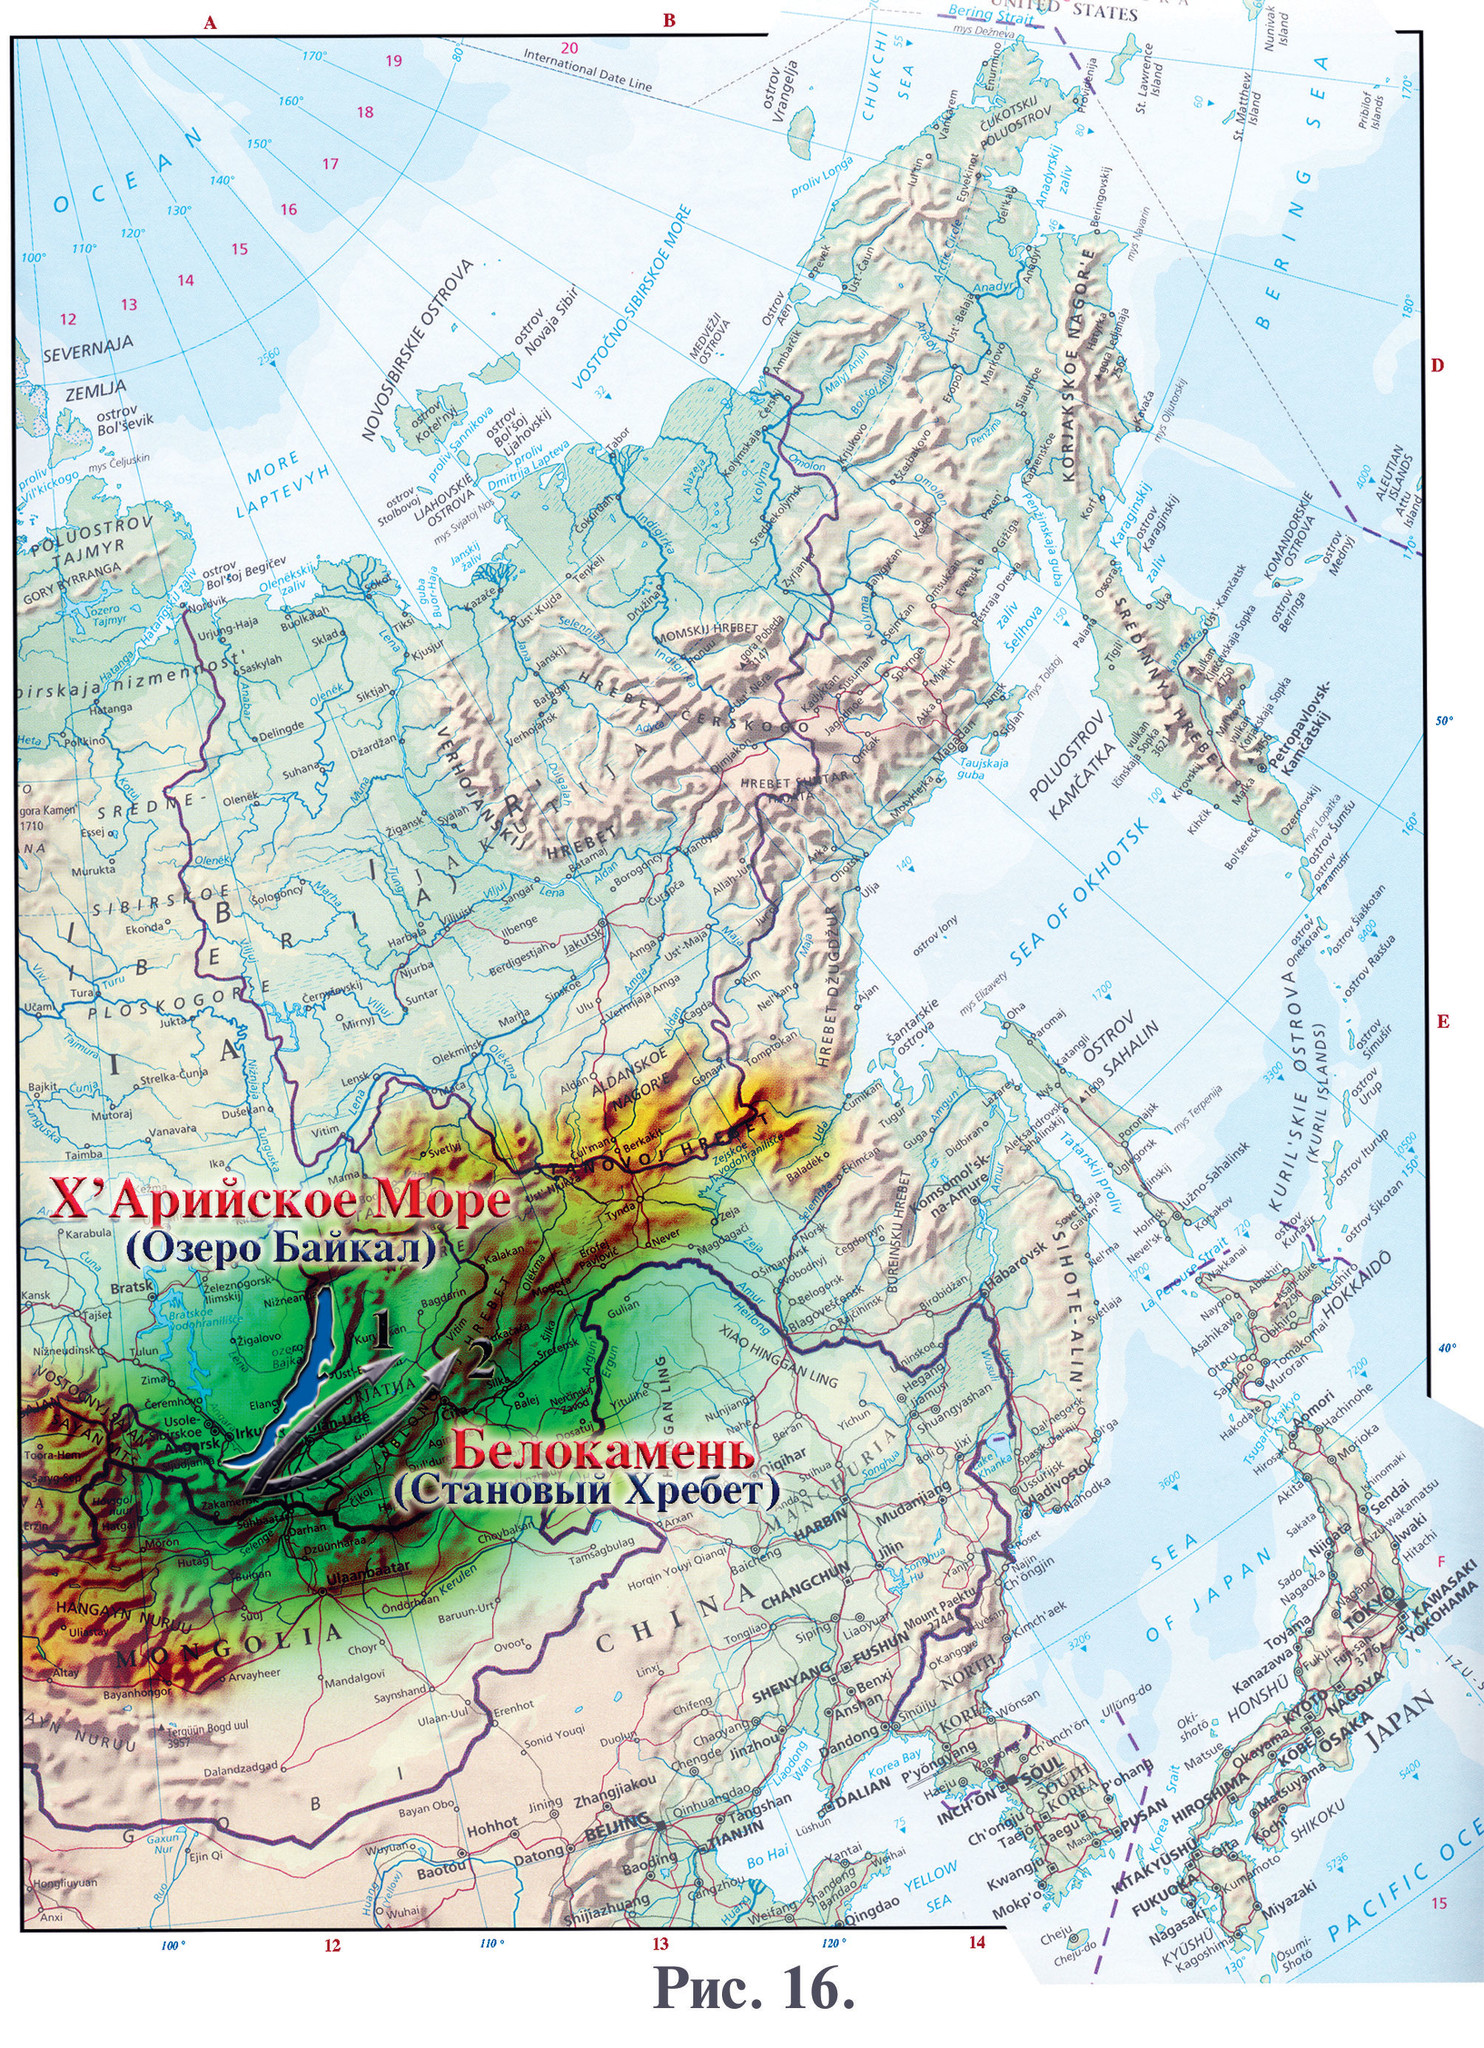 Горы становой хребет на карте России